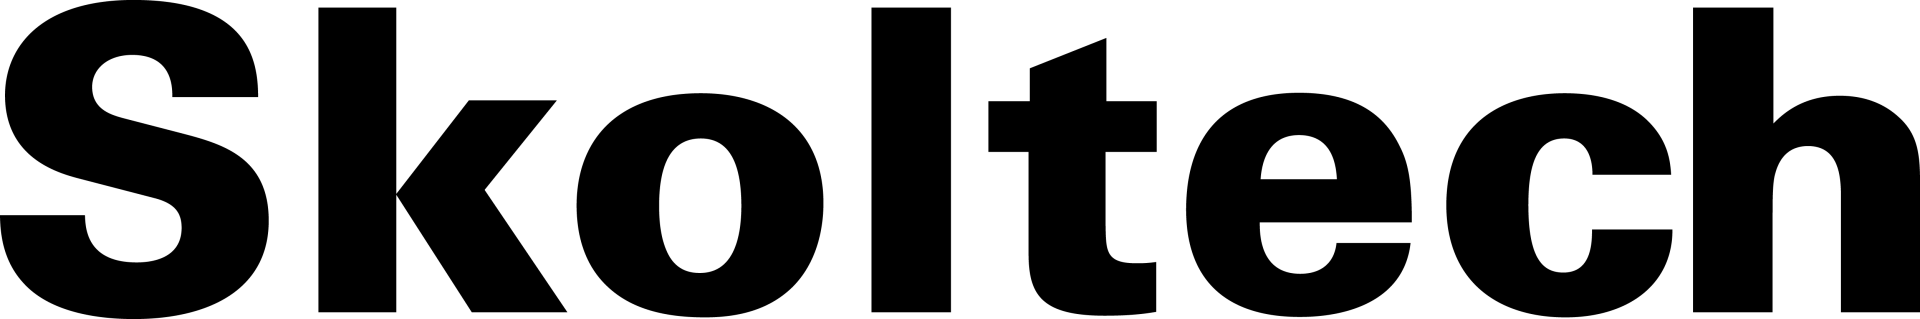 Skoltech_Logo.png